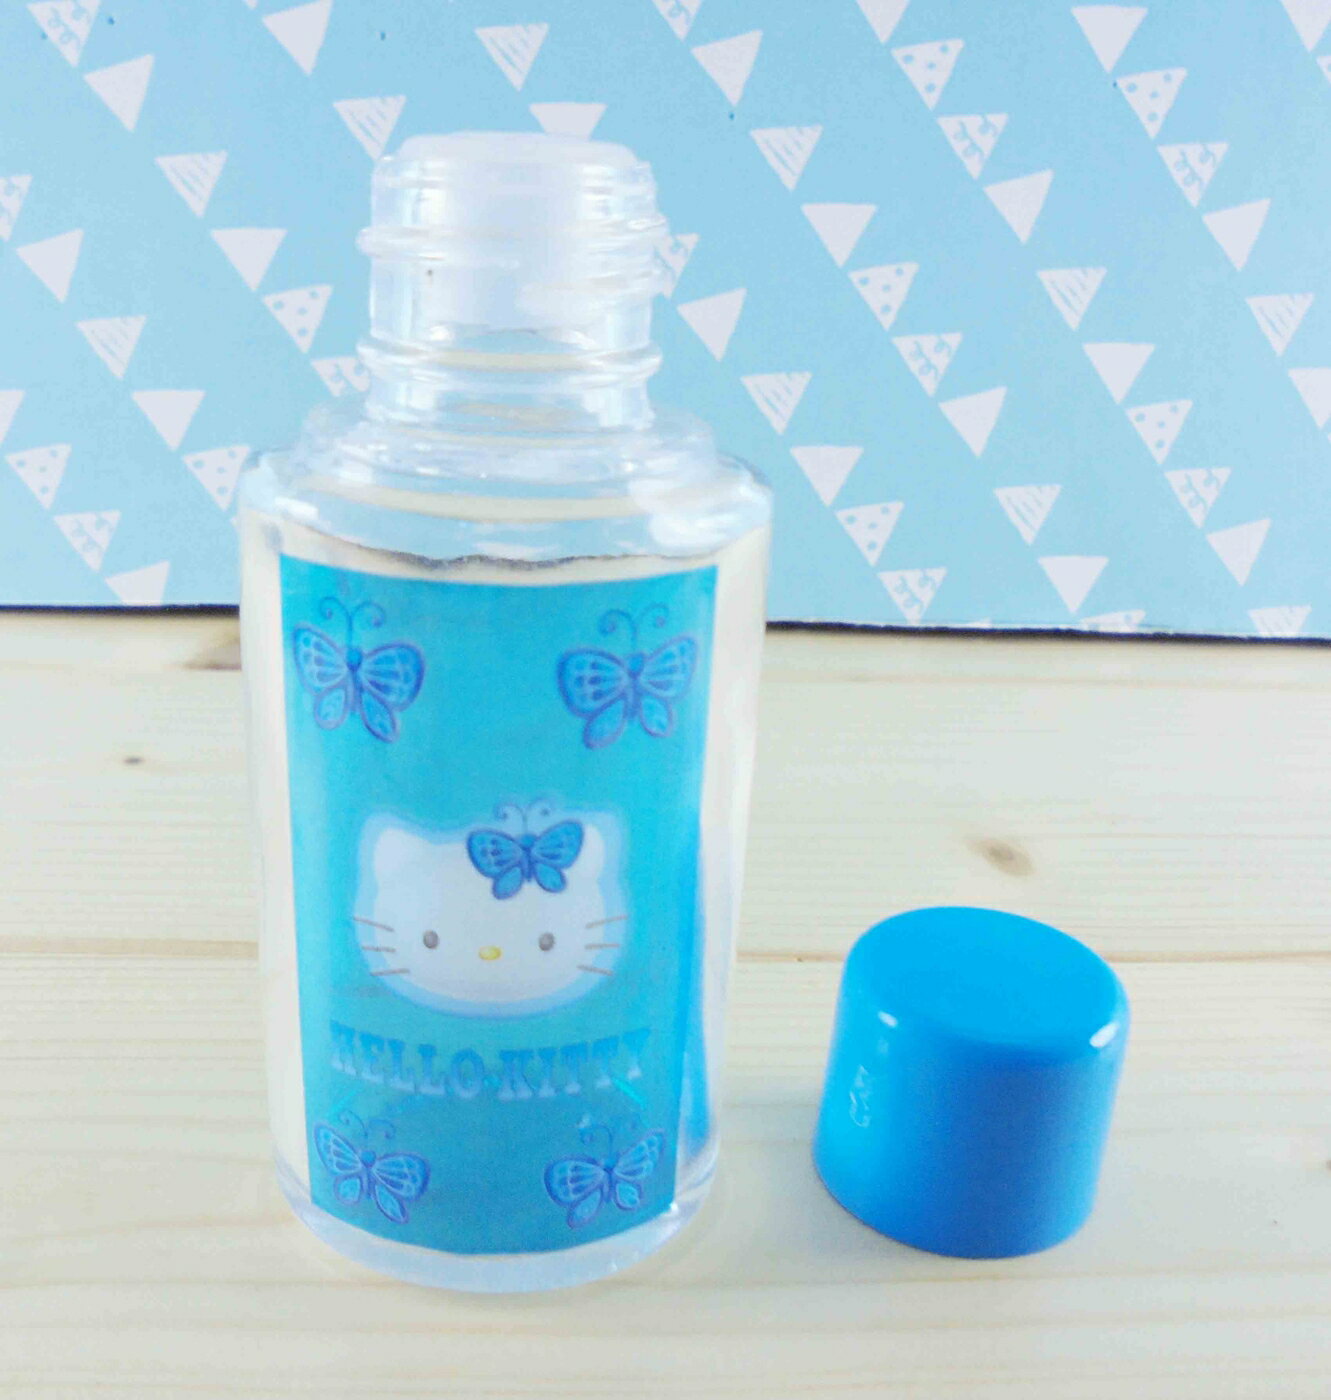 【震撼精品百貨】Hello Kitty 凱蒂貓 KITT造型玻璃瓶-紫蝴蝶 震撼日式精品百貨